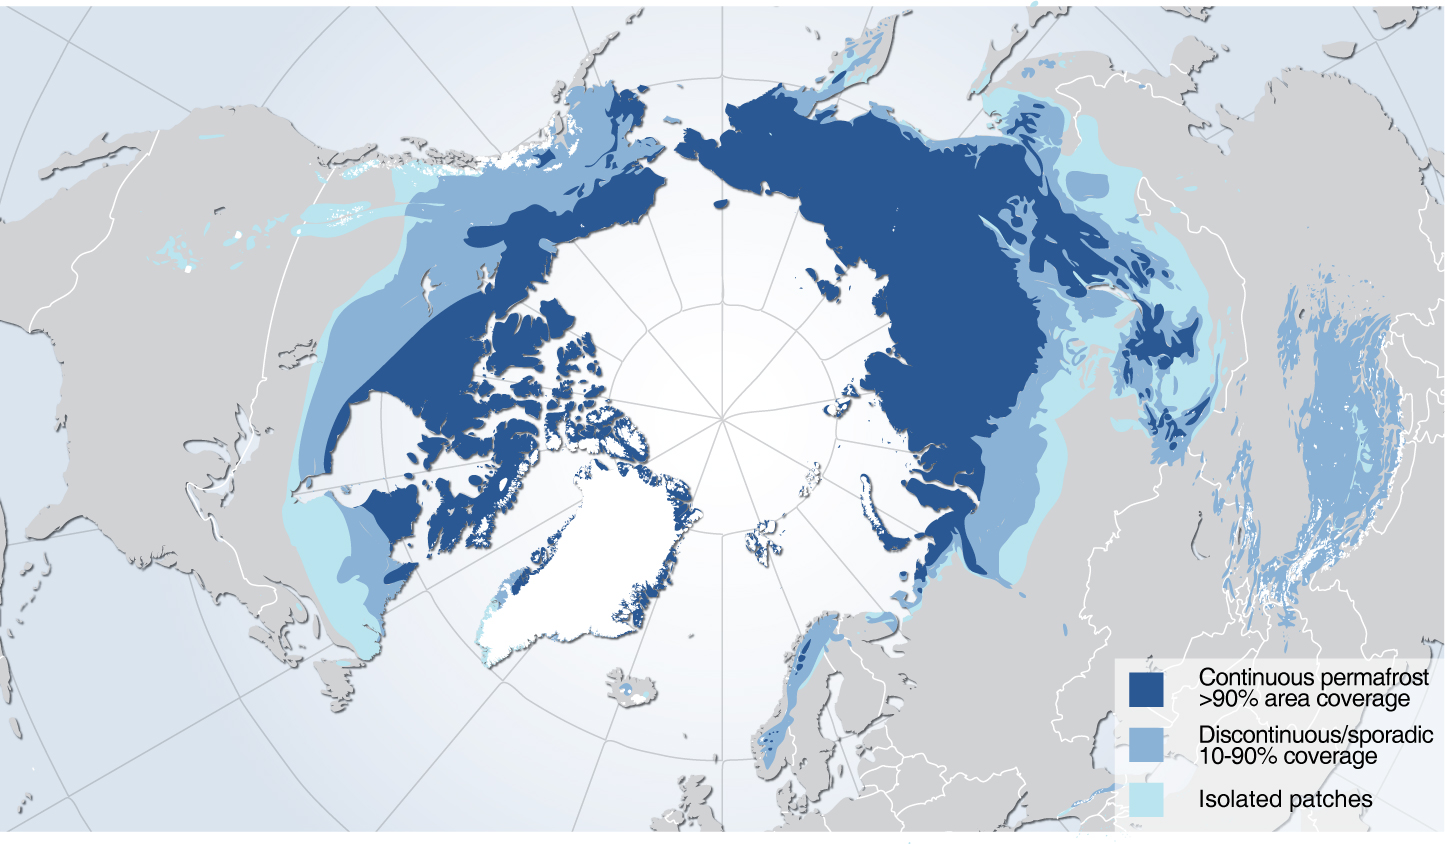 Permafrost - Image credit: Hugo Ahlenius, UNEP/GRID-Arendal